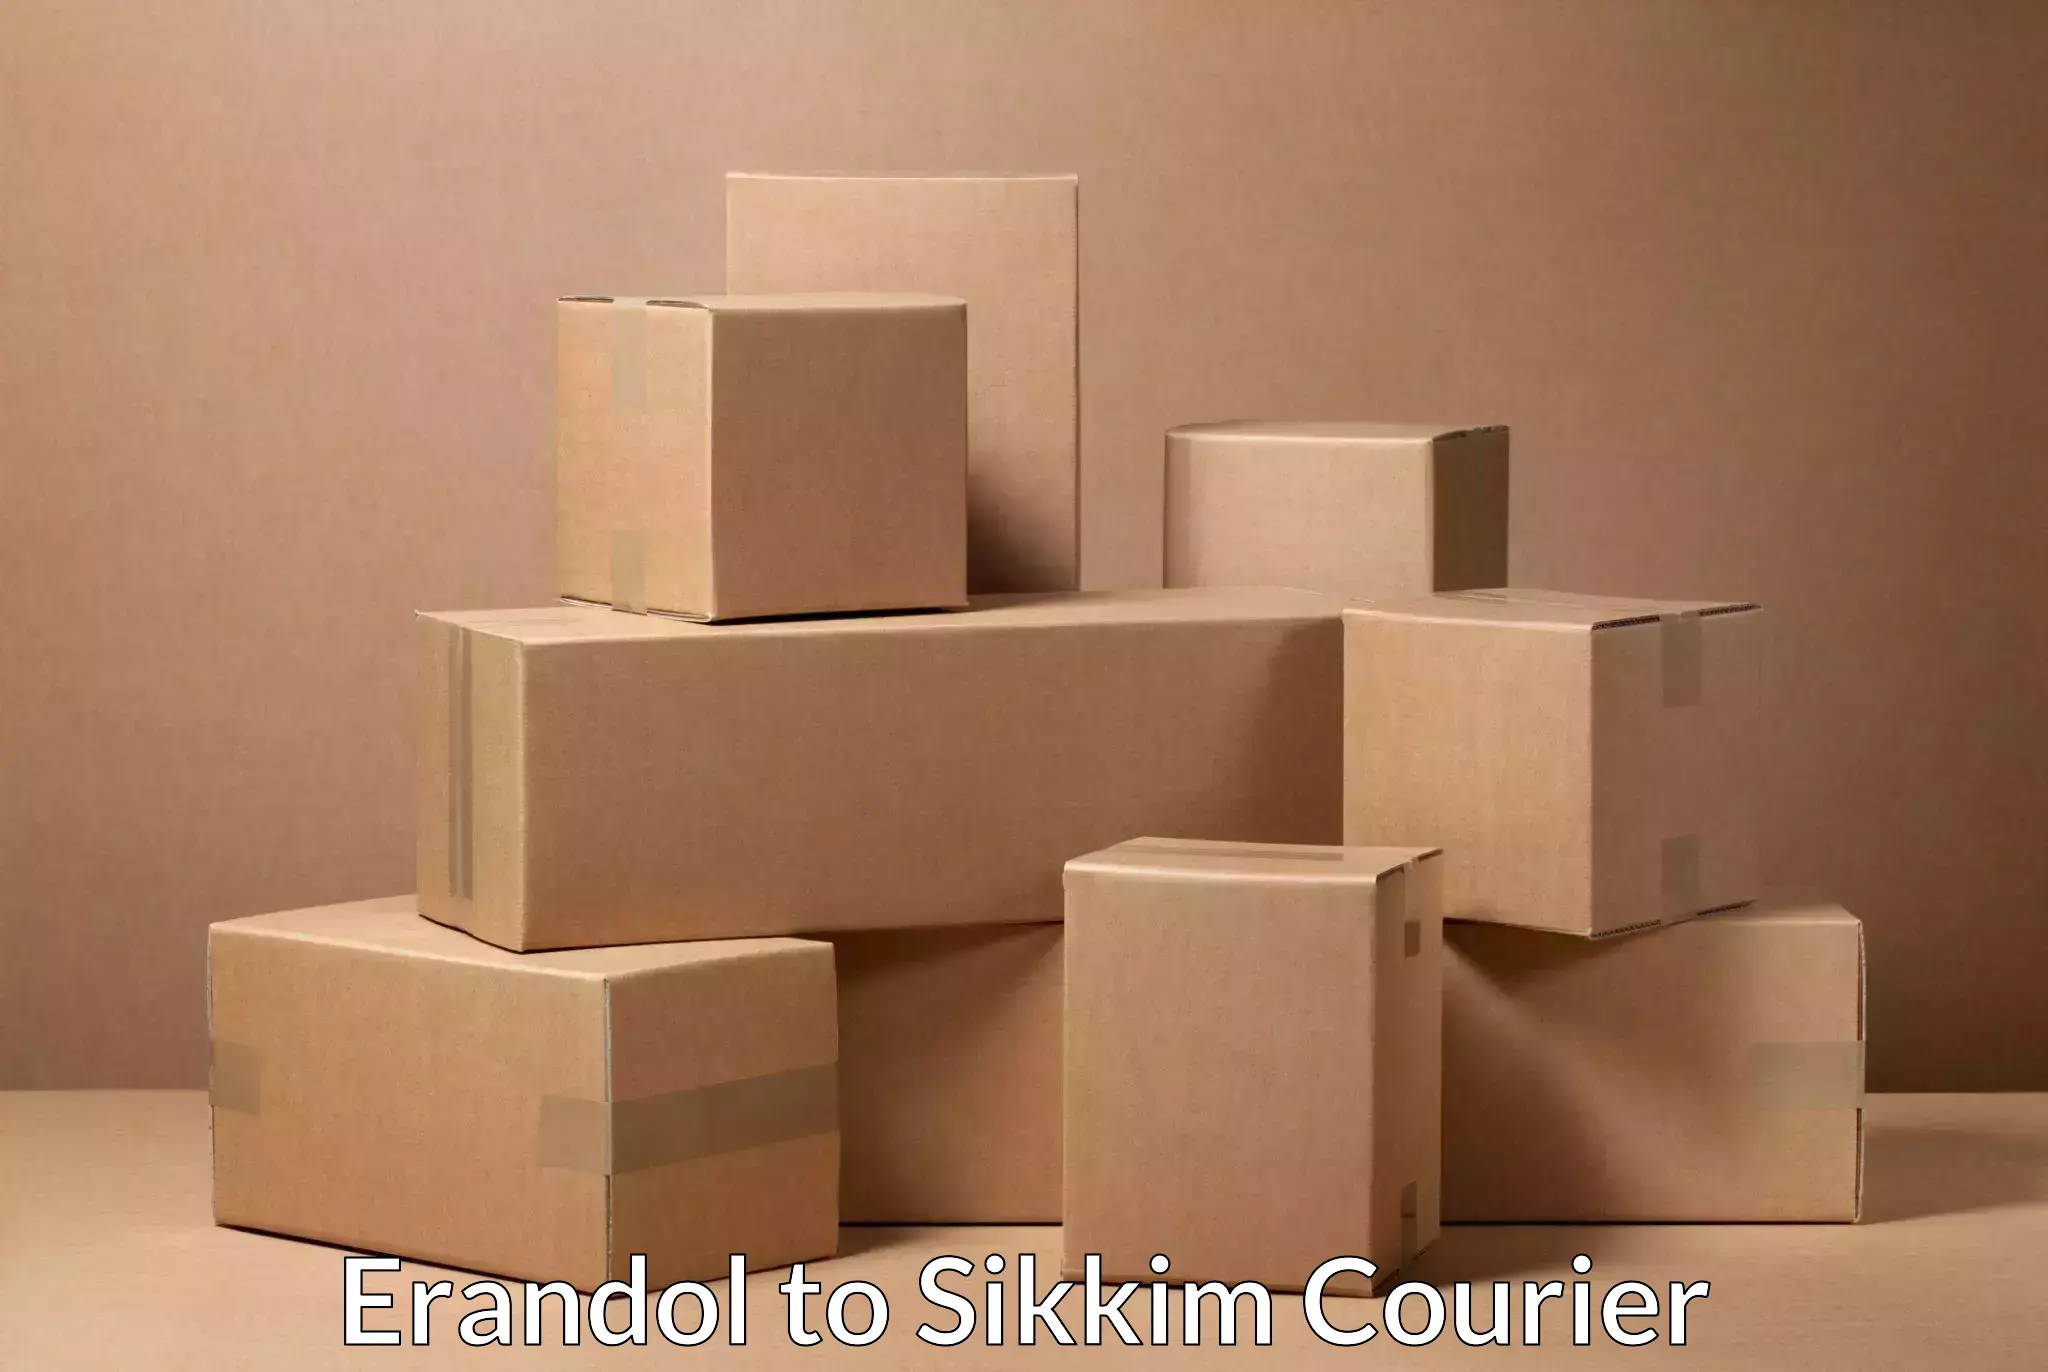 Lightweight courier Erandol to East Sikkim